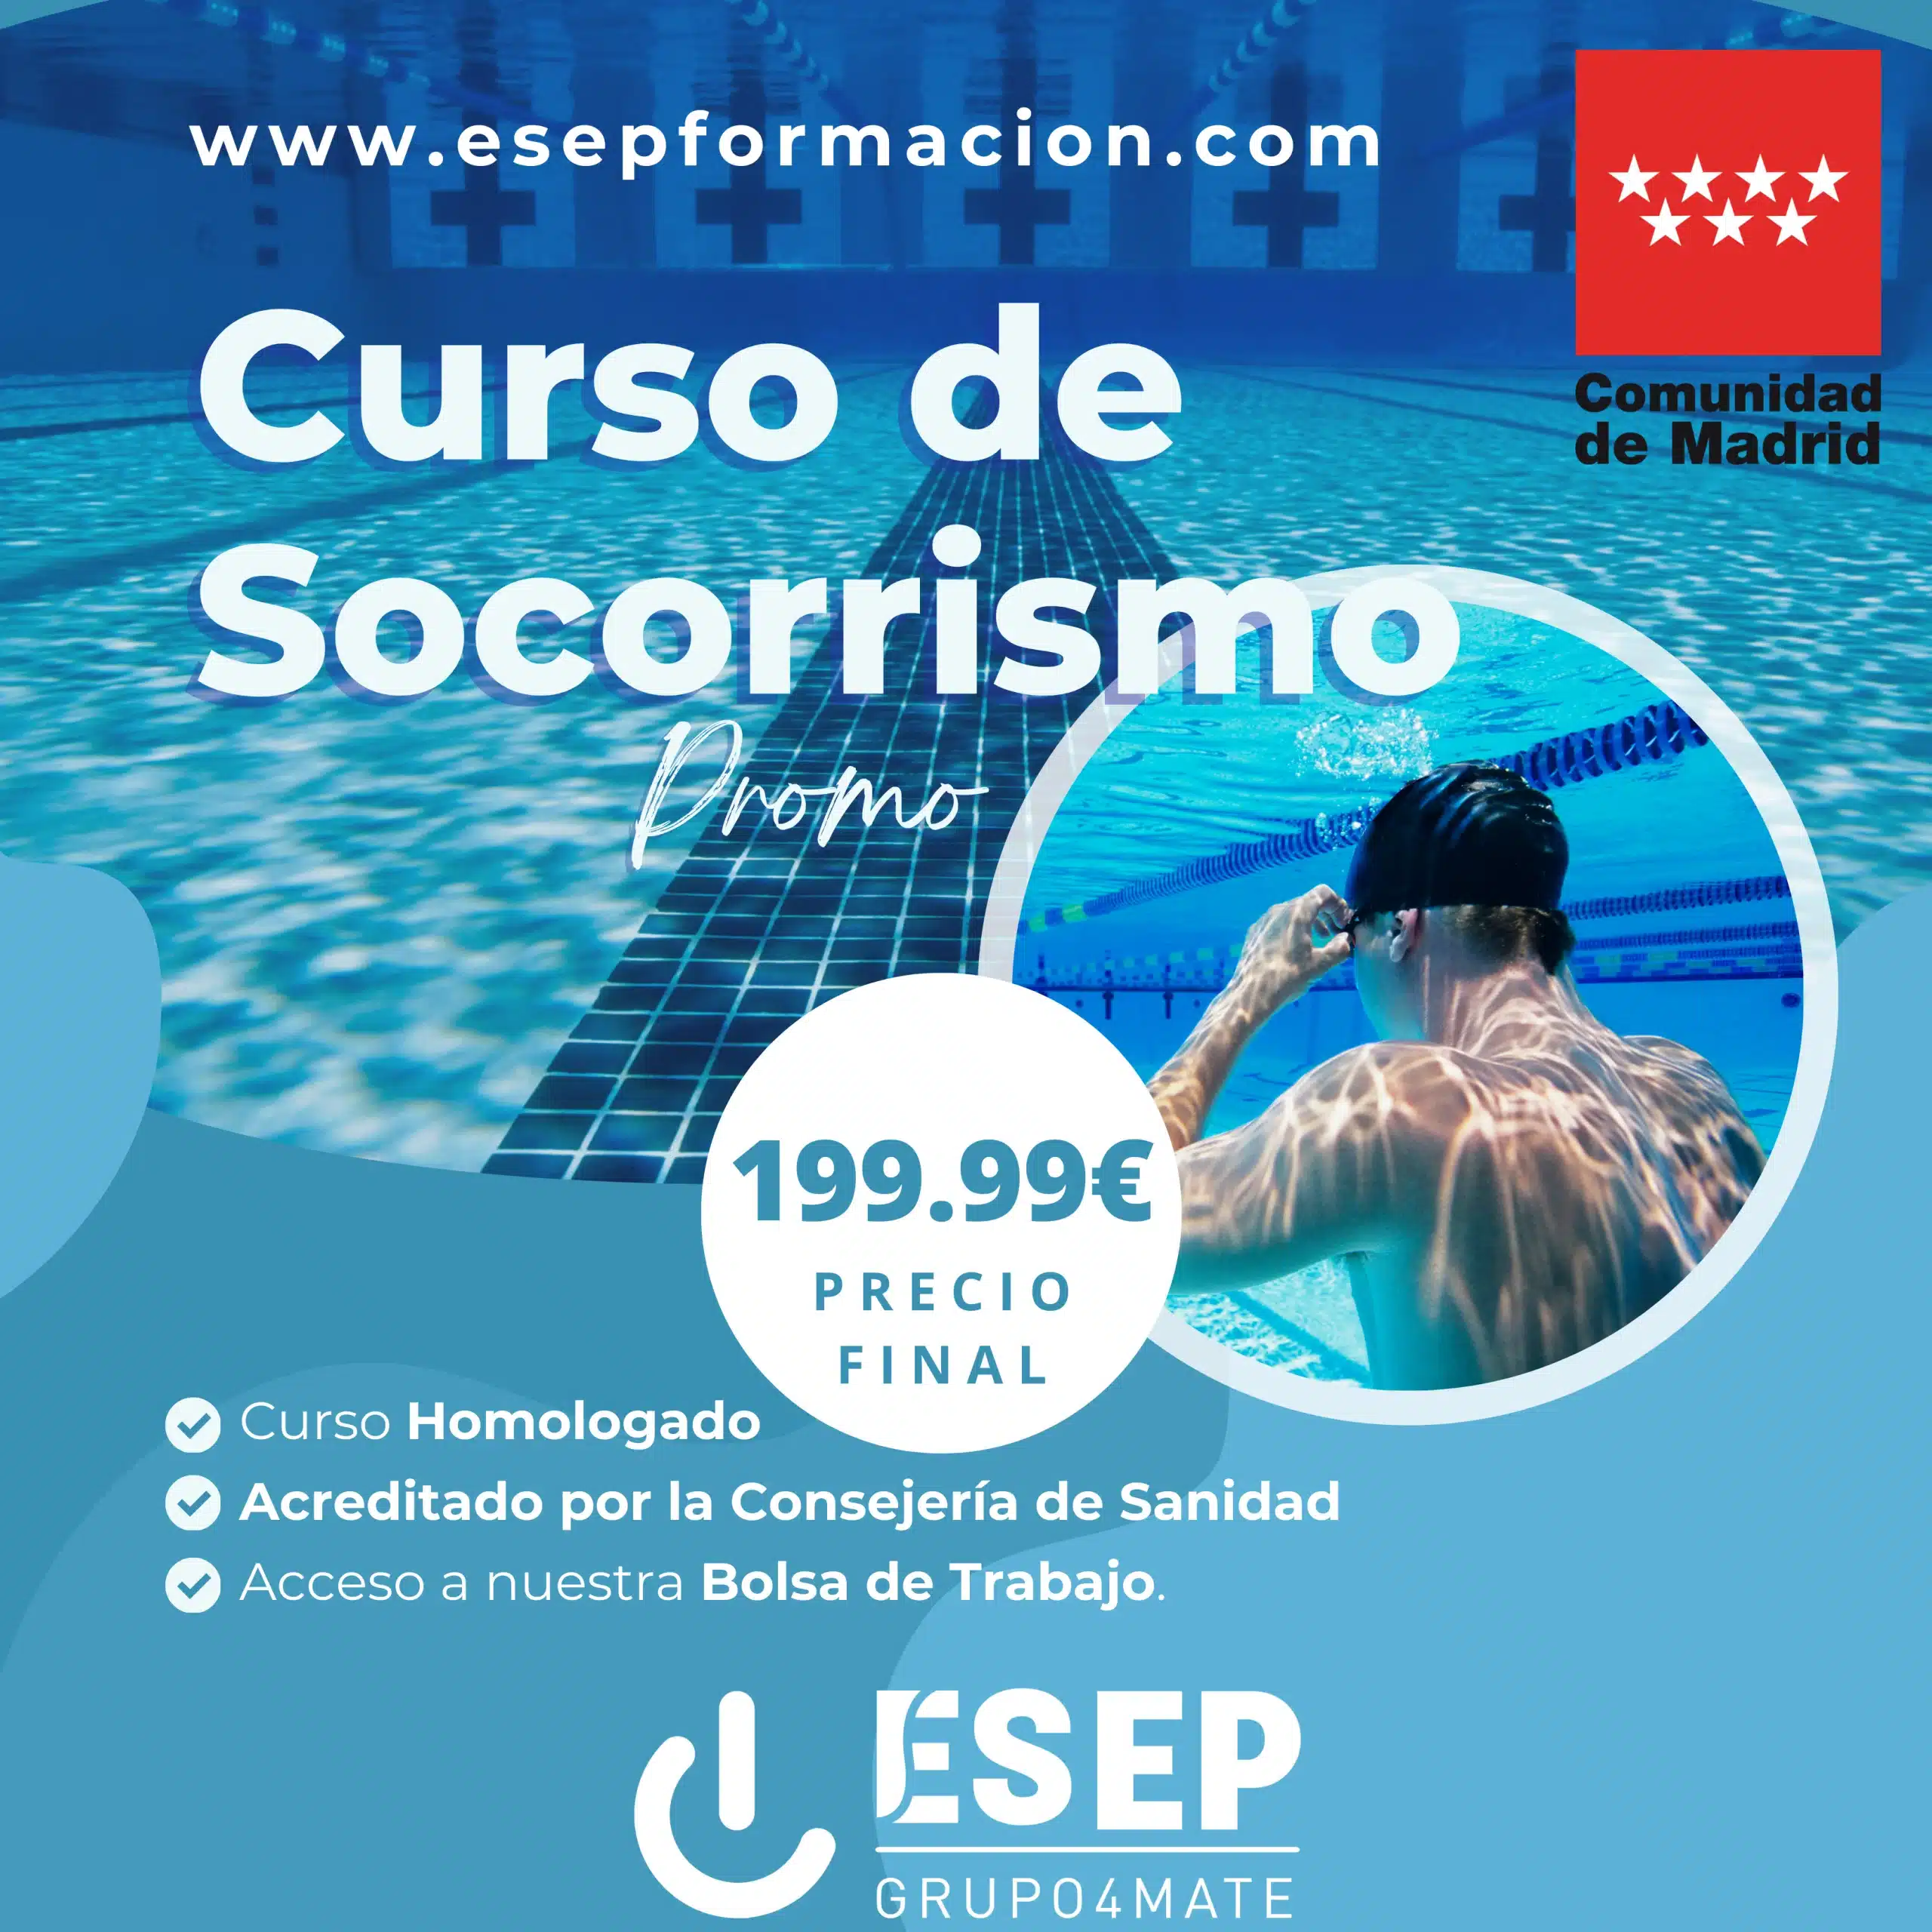 Oferta Curso de Socorrismo 199,99€. Homologado y acreditado por la Consejería de Sanidad de la Comunidad de Madrid.